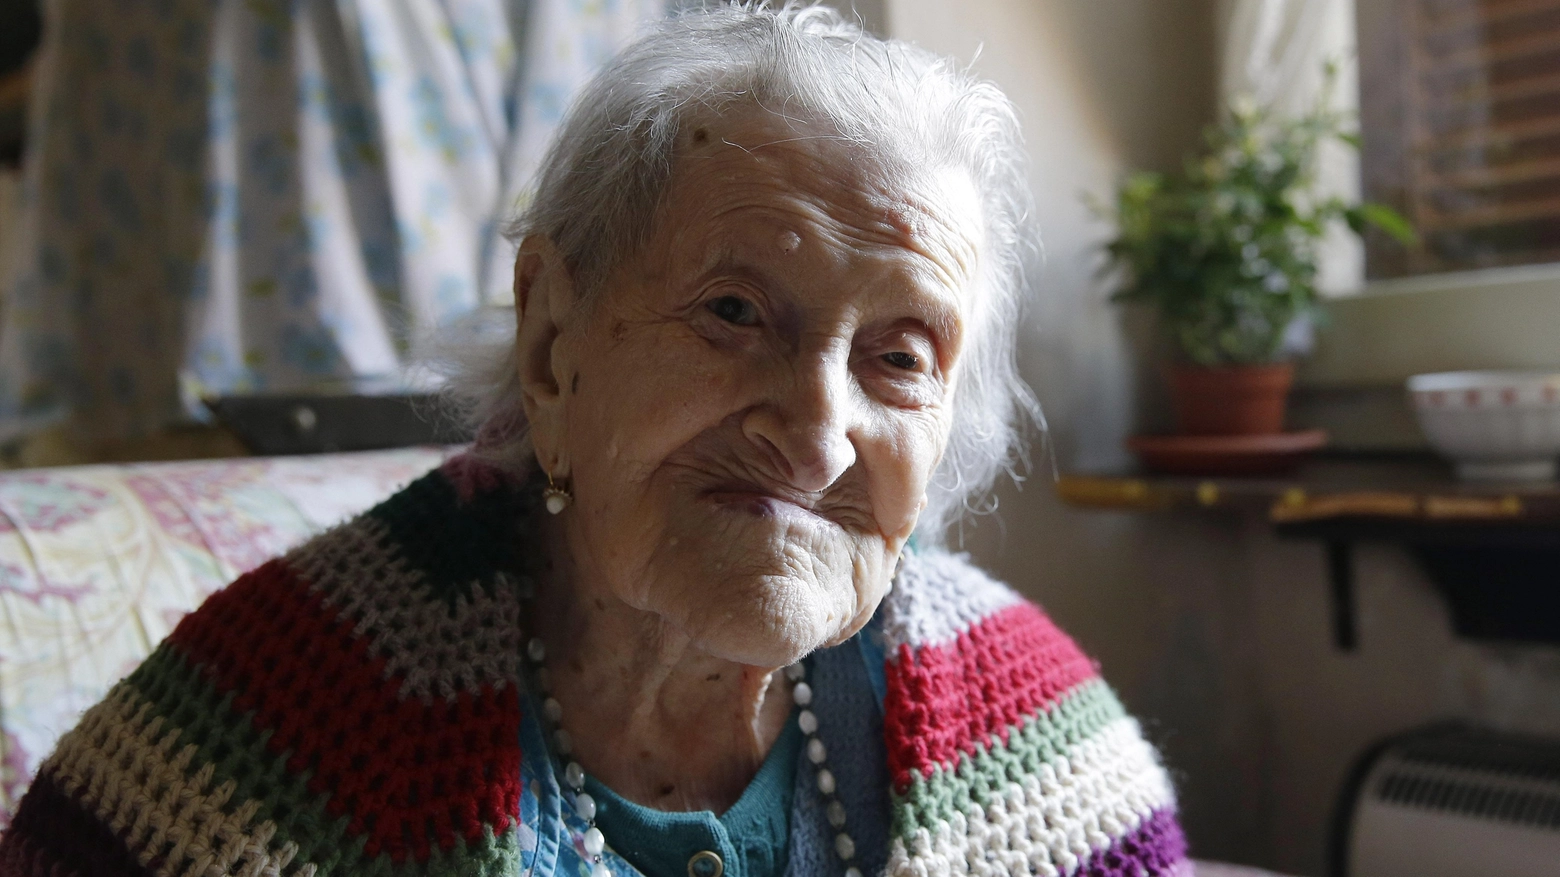 Emma Morano a 115, è la più longeva d'Europa (Ansa)